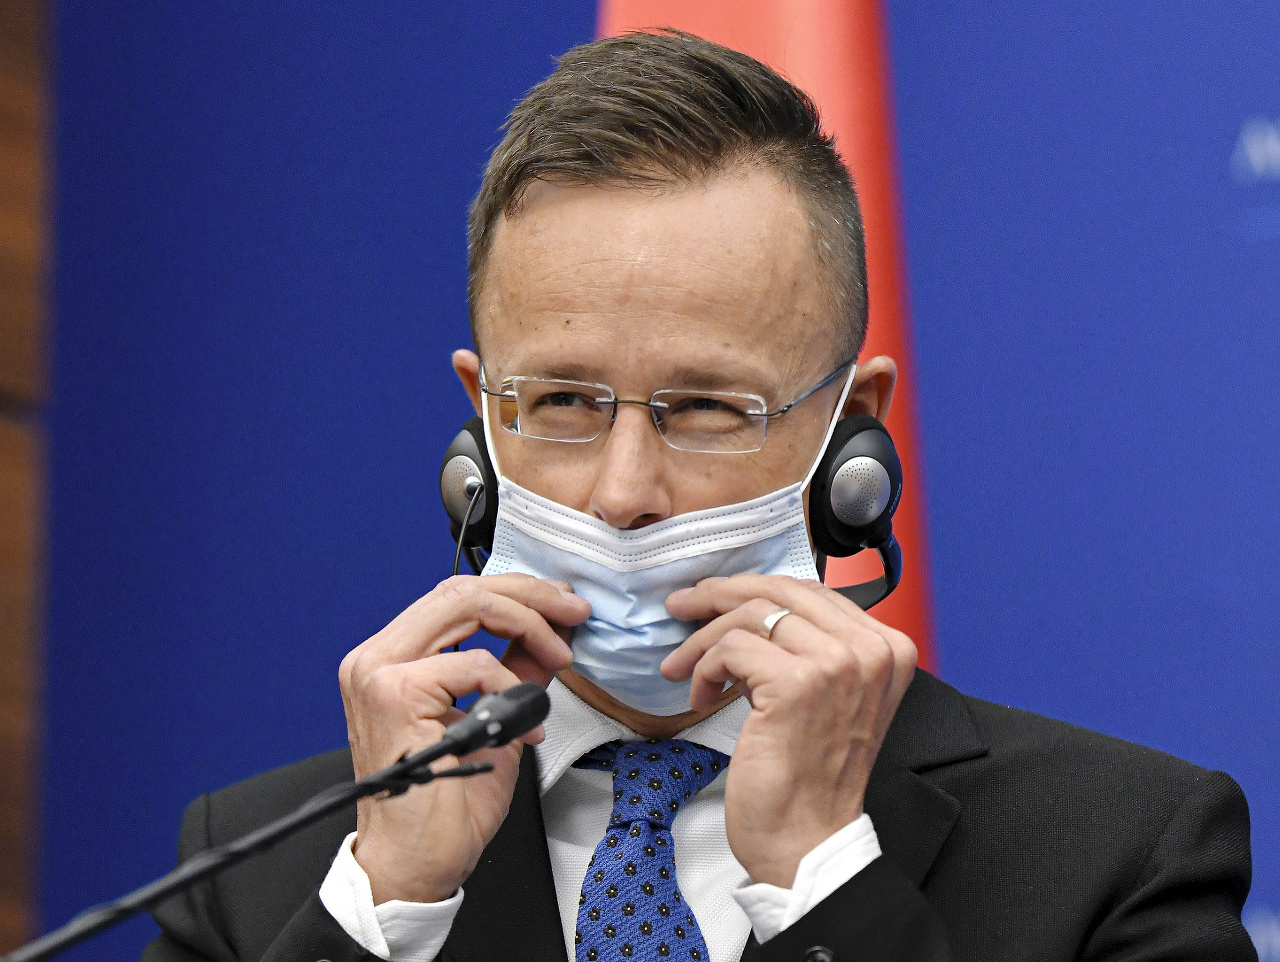 Maďarský minister zahraničných vecí Péter Szijjártó